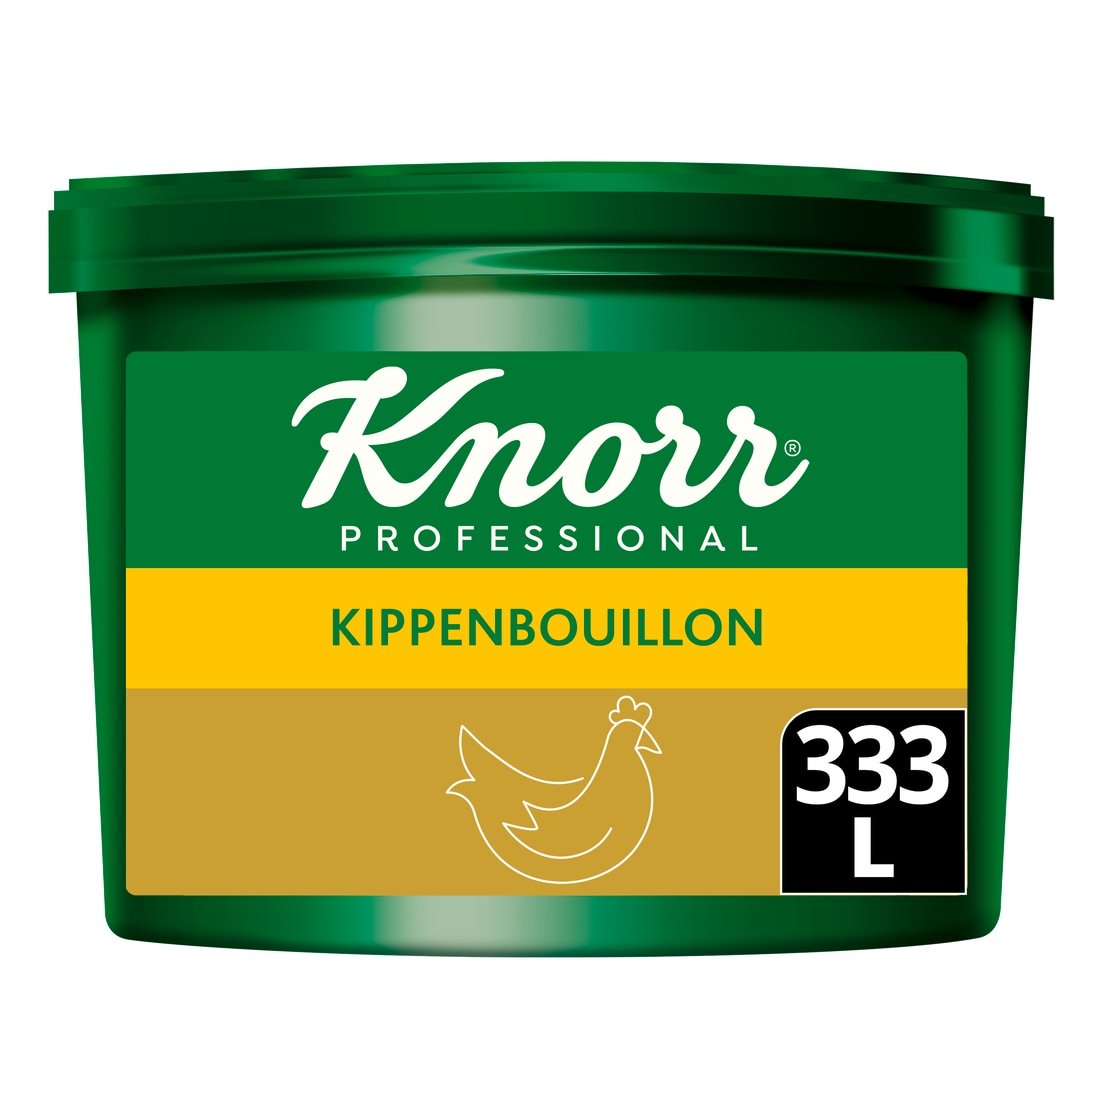 Knorr Professional Kippenbouillon poeder krachtig 333L - 